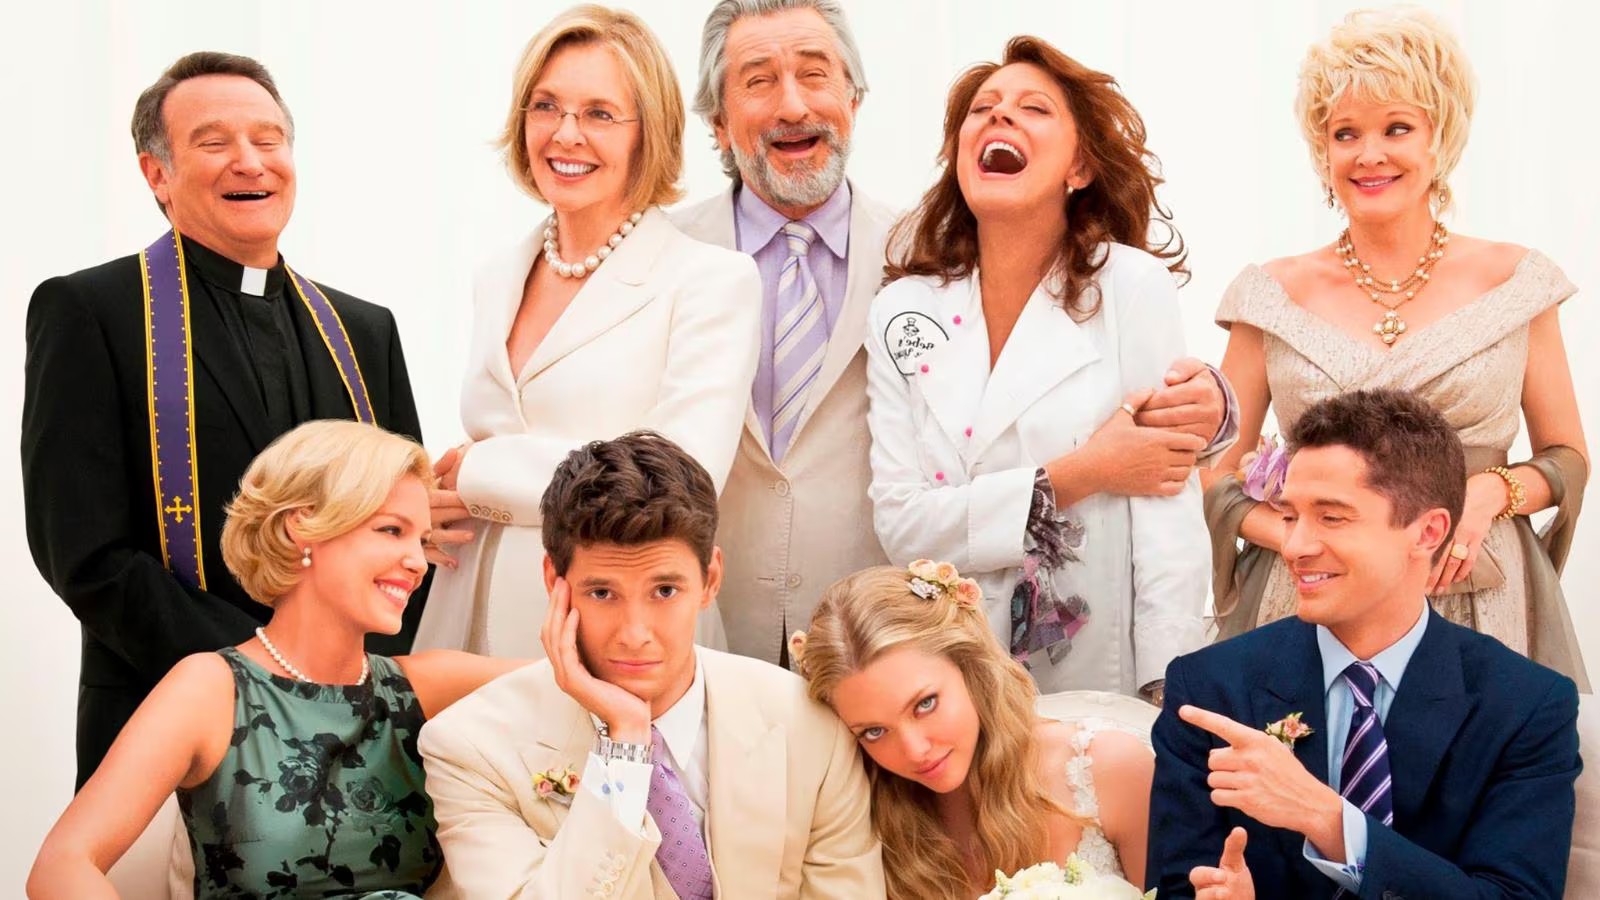 Big Wedding stasera su Nove: cast, curiosità e trama della commedia con Robert De Niro e Robin Williams